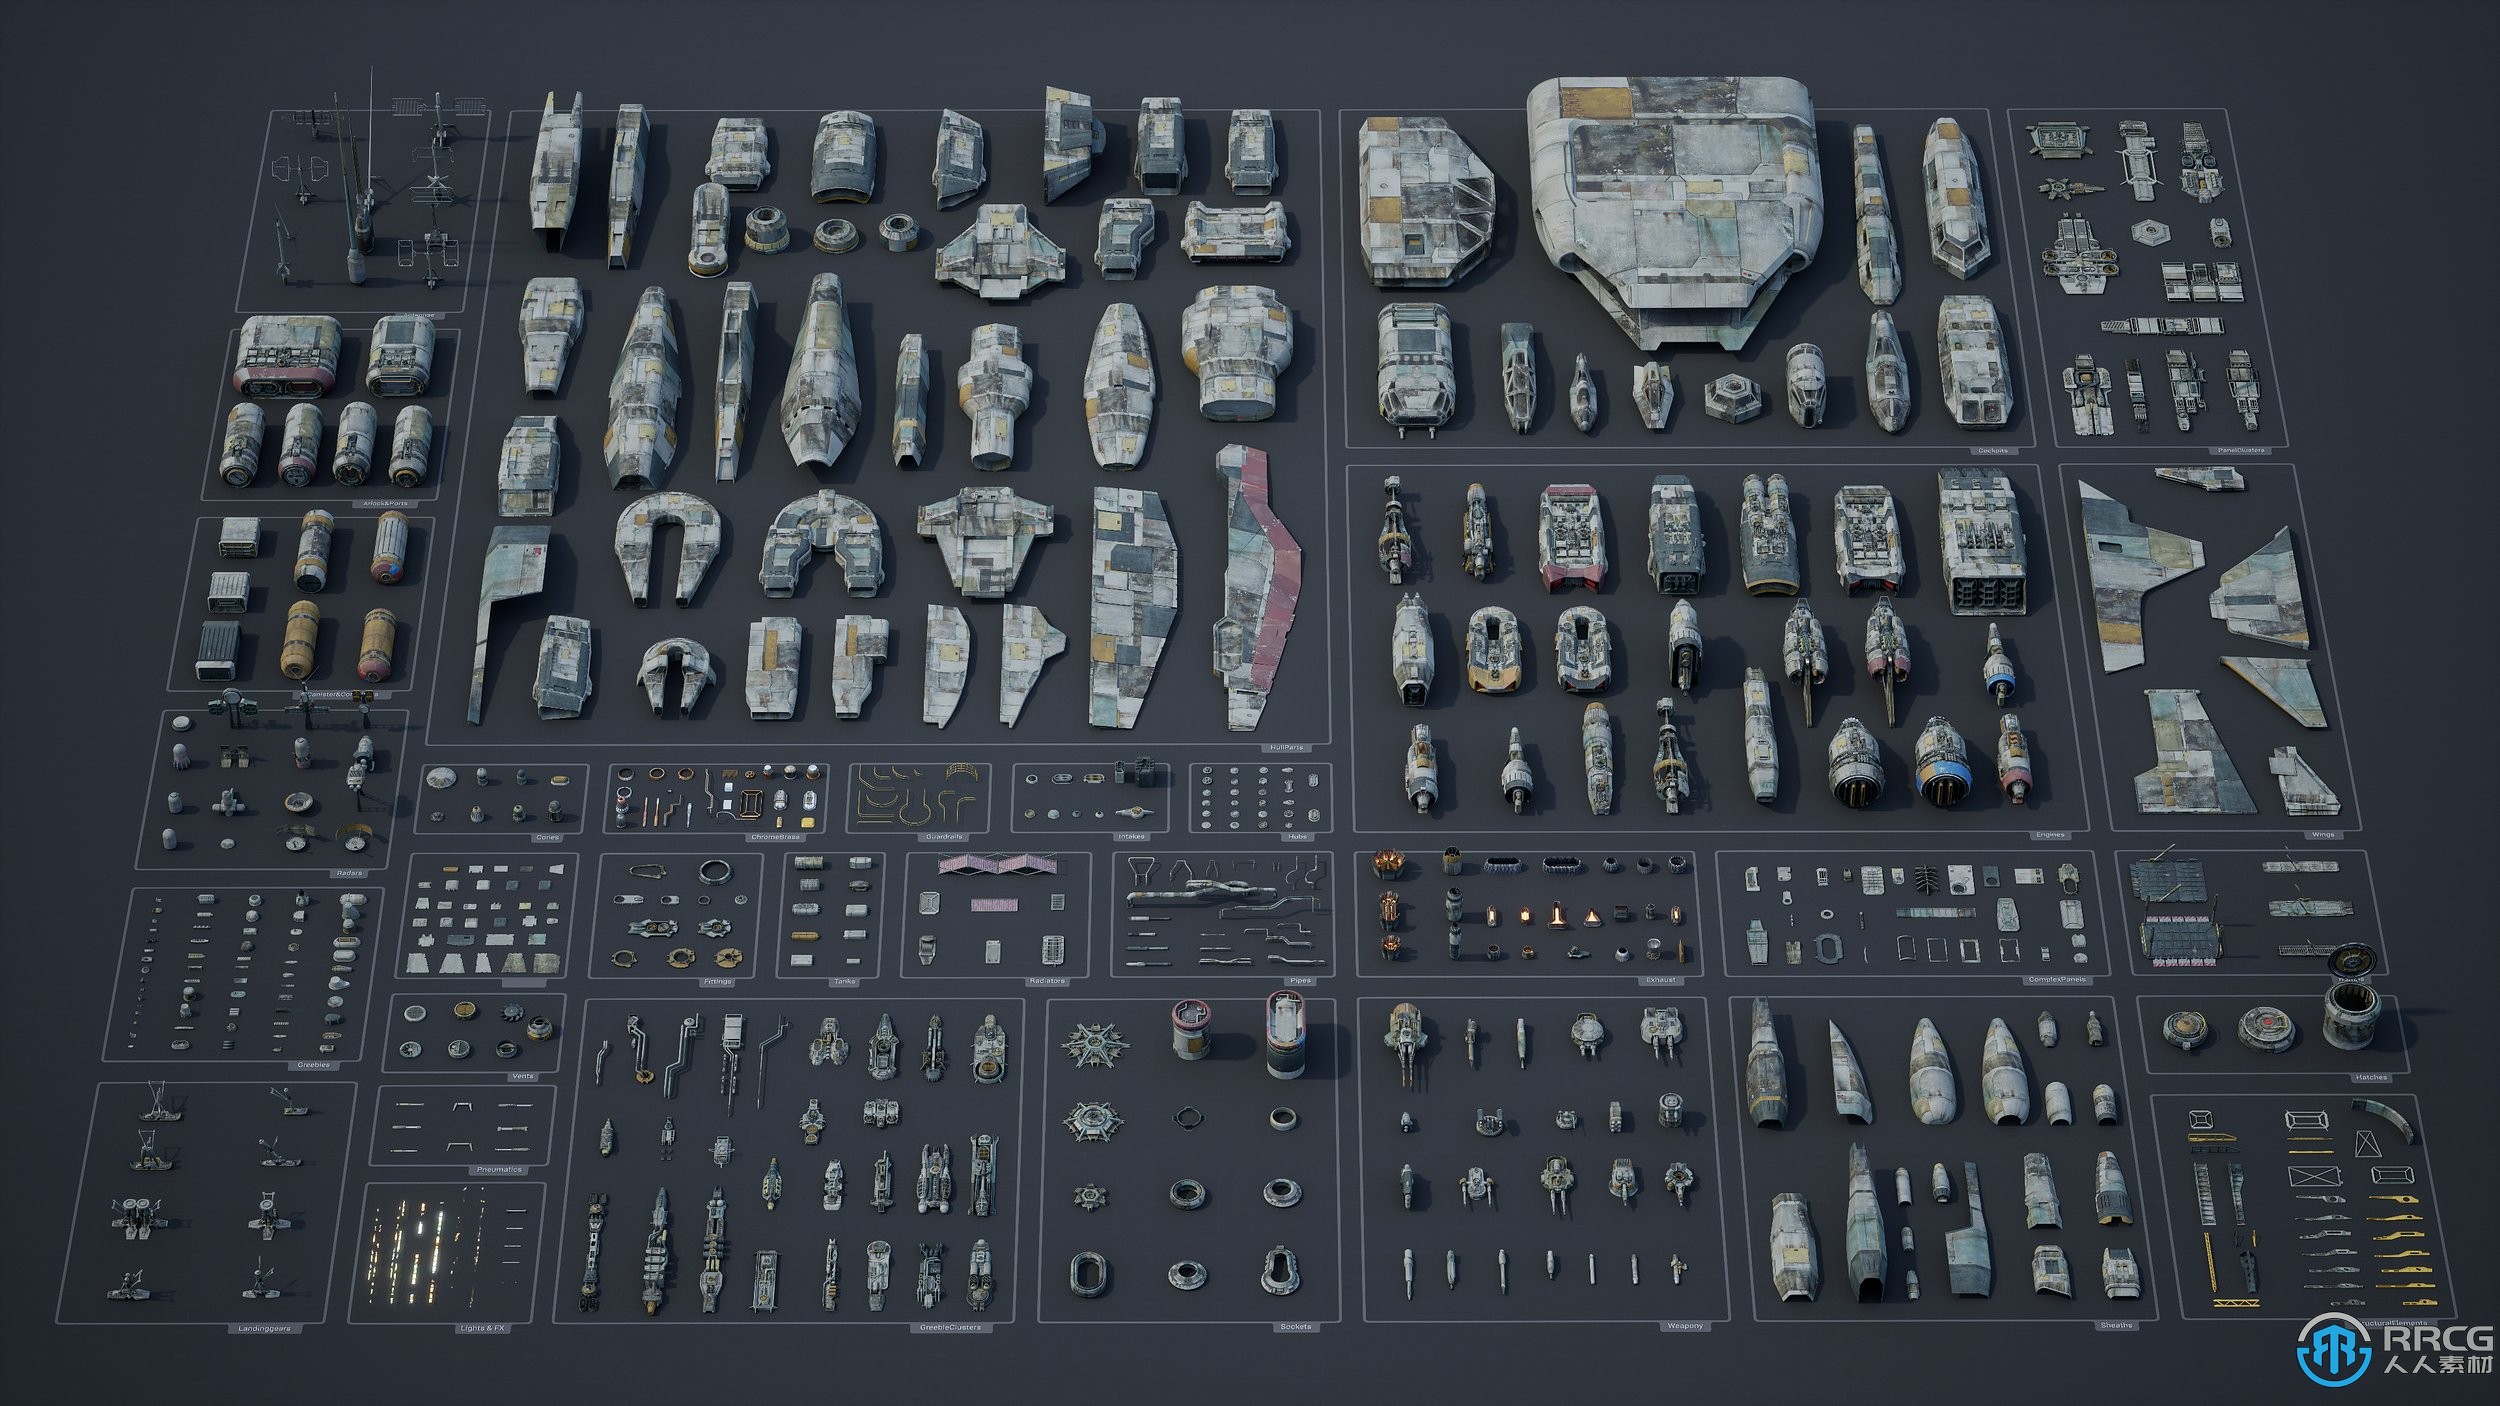 600组完整宇宙飞船星际舰队与相关人员3D模型合集第二季